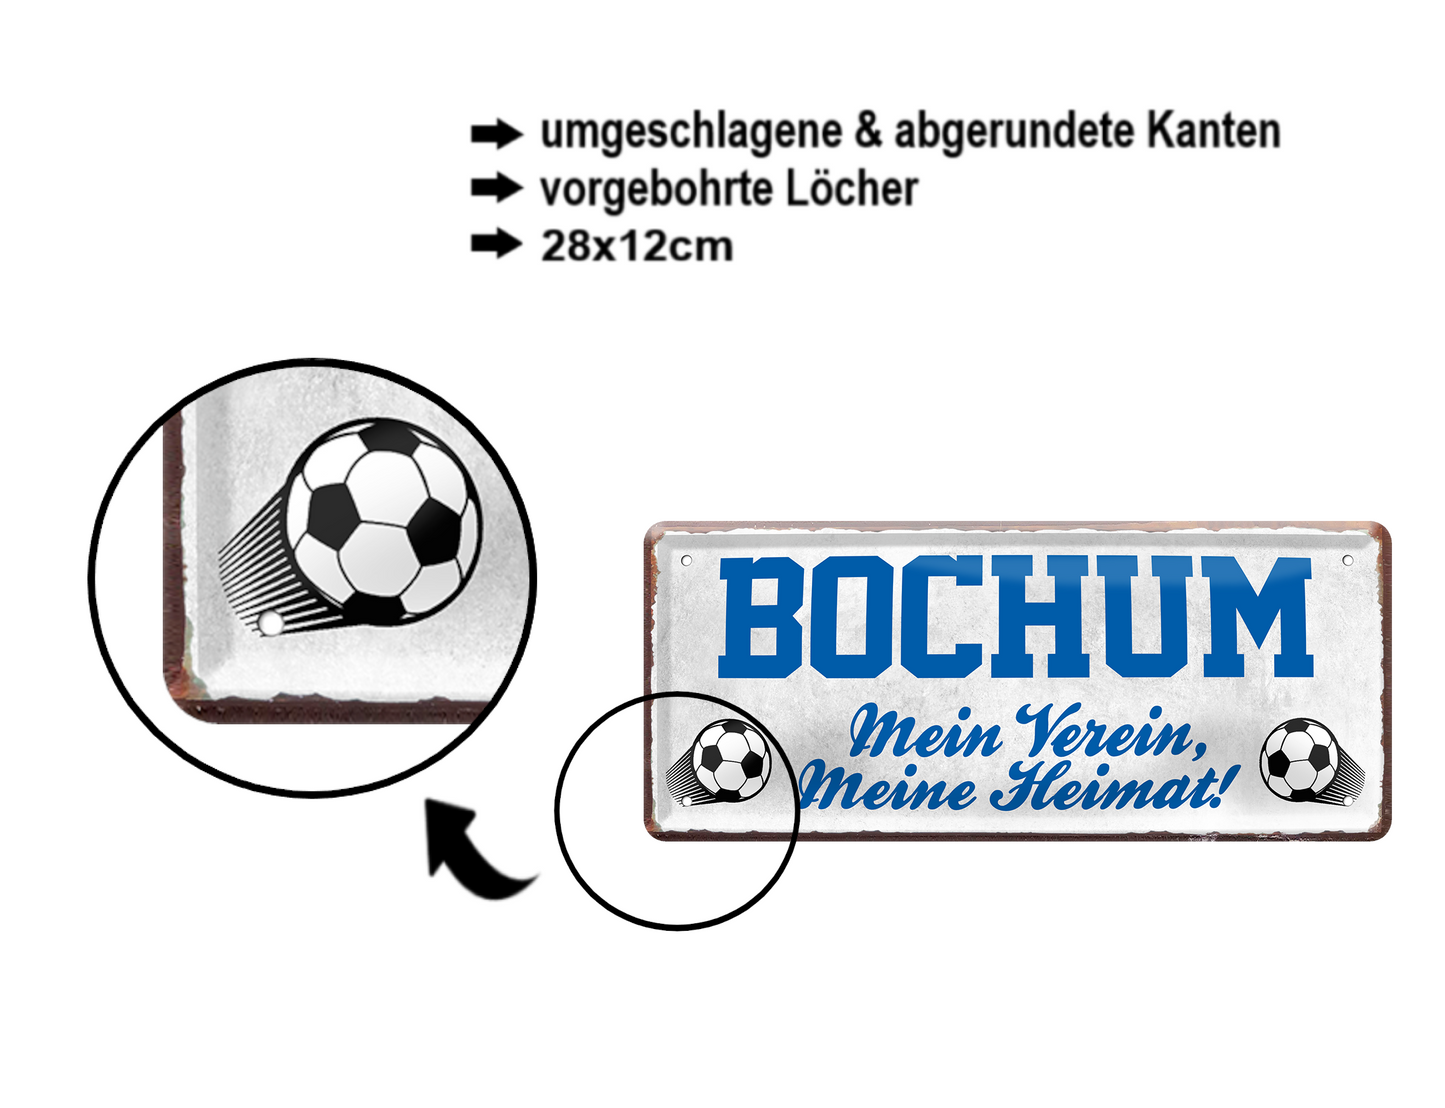 Blechschild ''Bochum Mein Verein, meine Heimat'' 28x12cm